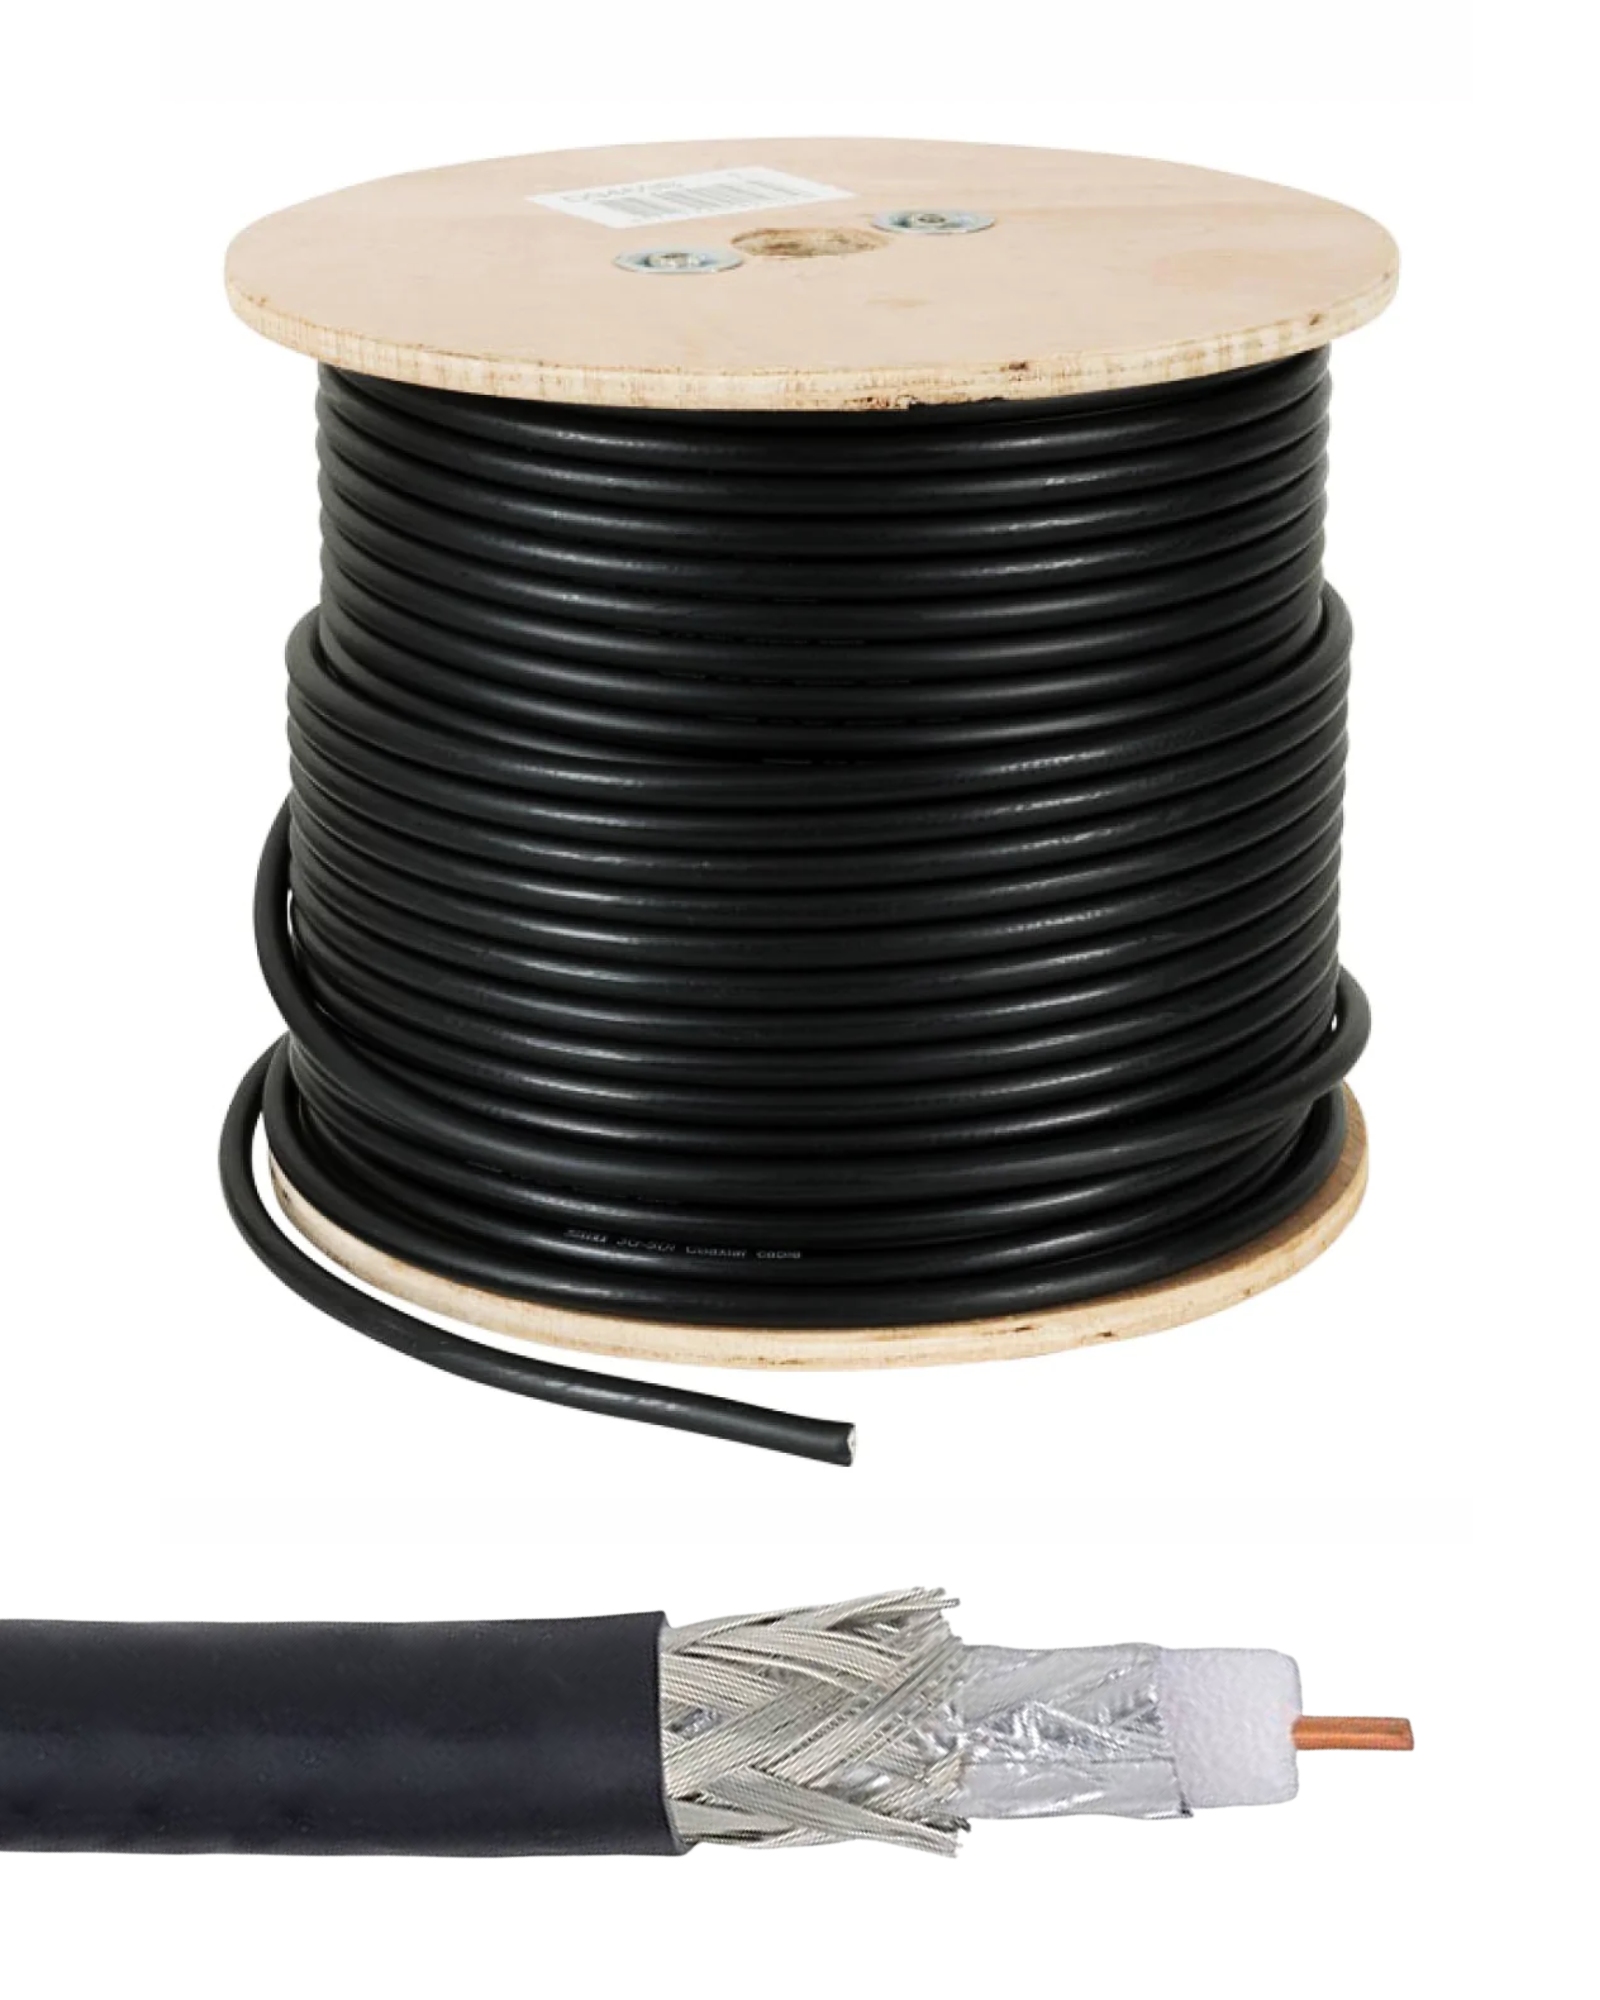 Bobina Cable Coaxial RG6 para Antena  Tienda en Linea – Electronica Aragon